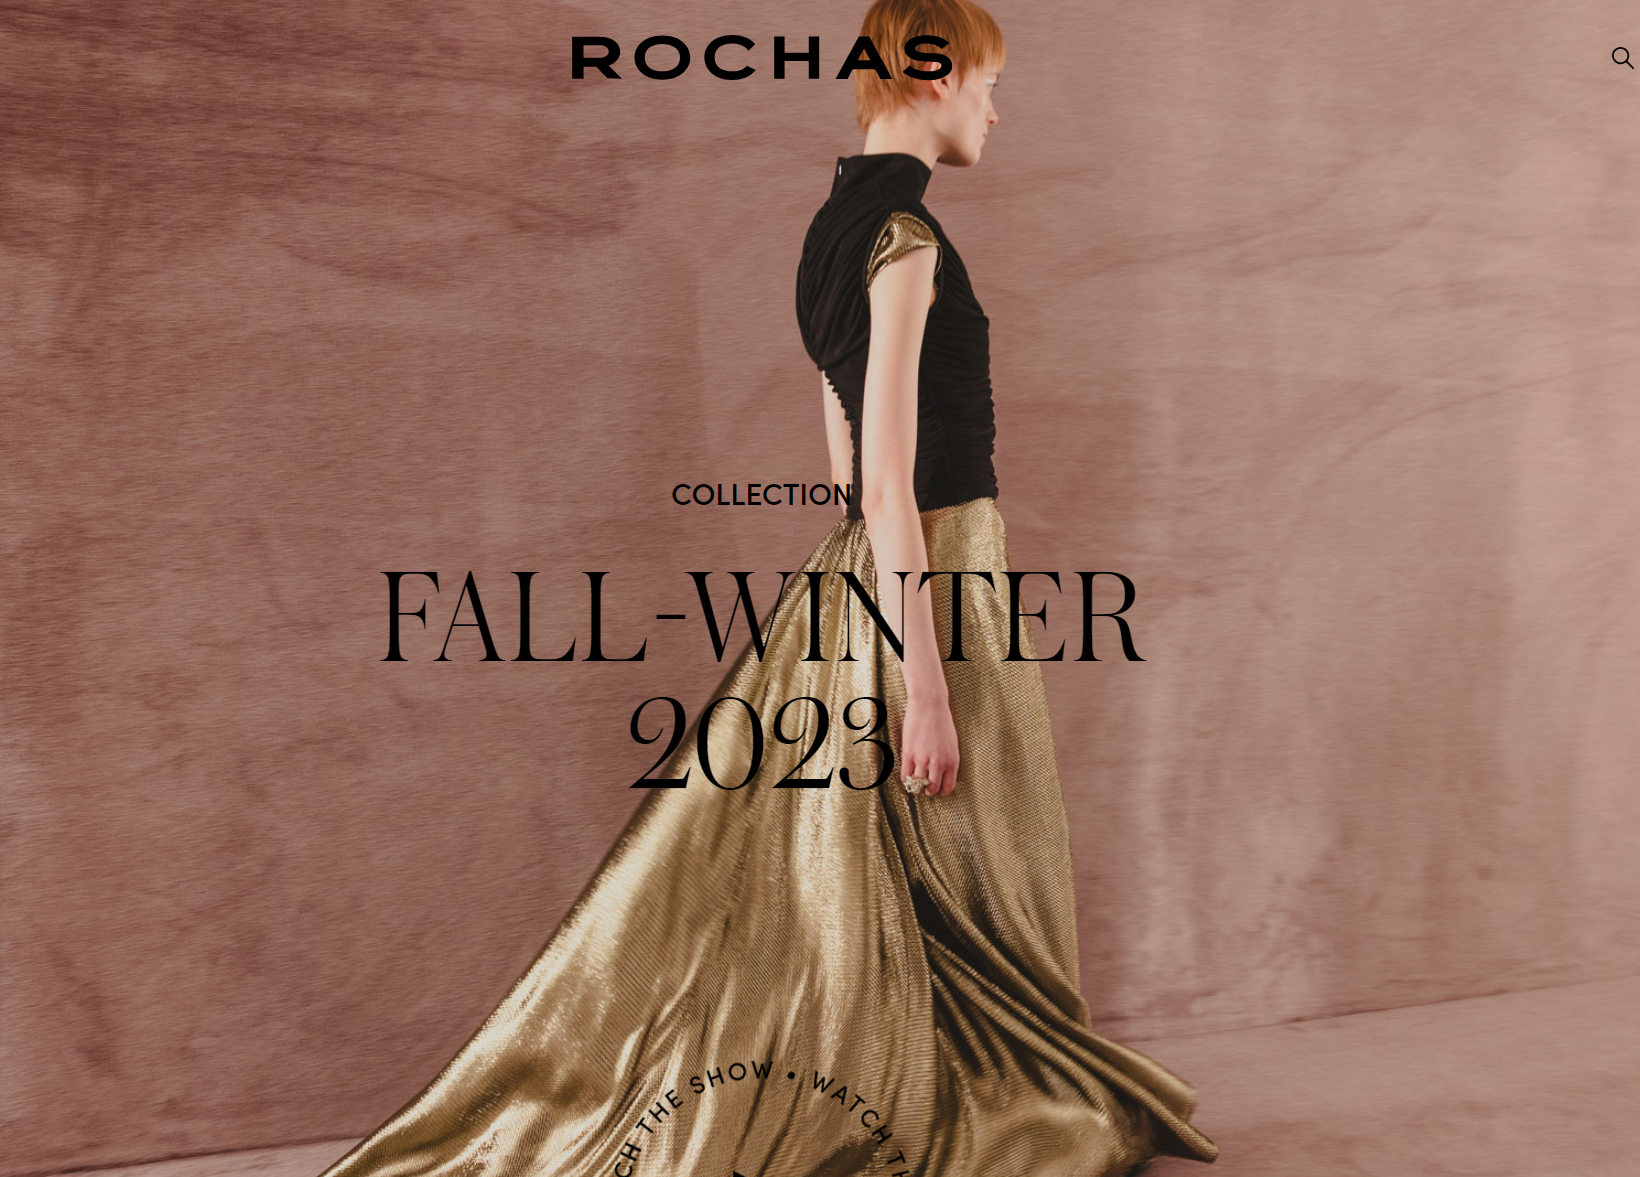 法国设计师品牌 Rochas 时装业务交还母公司 Interparfums 管理